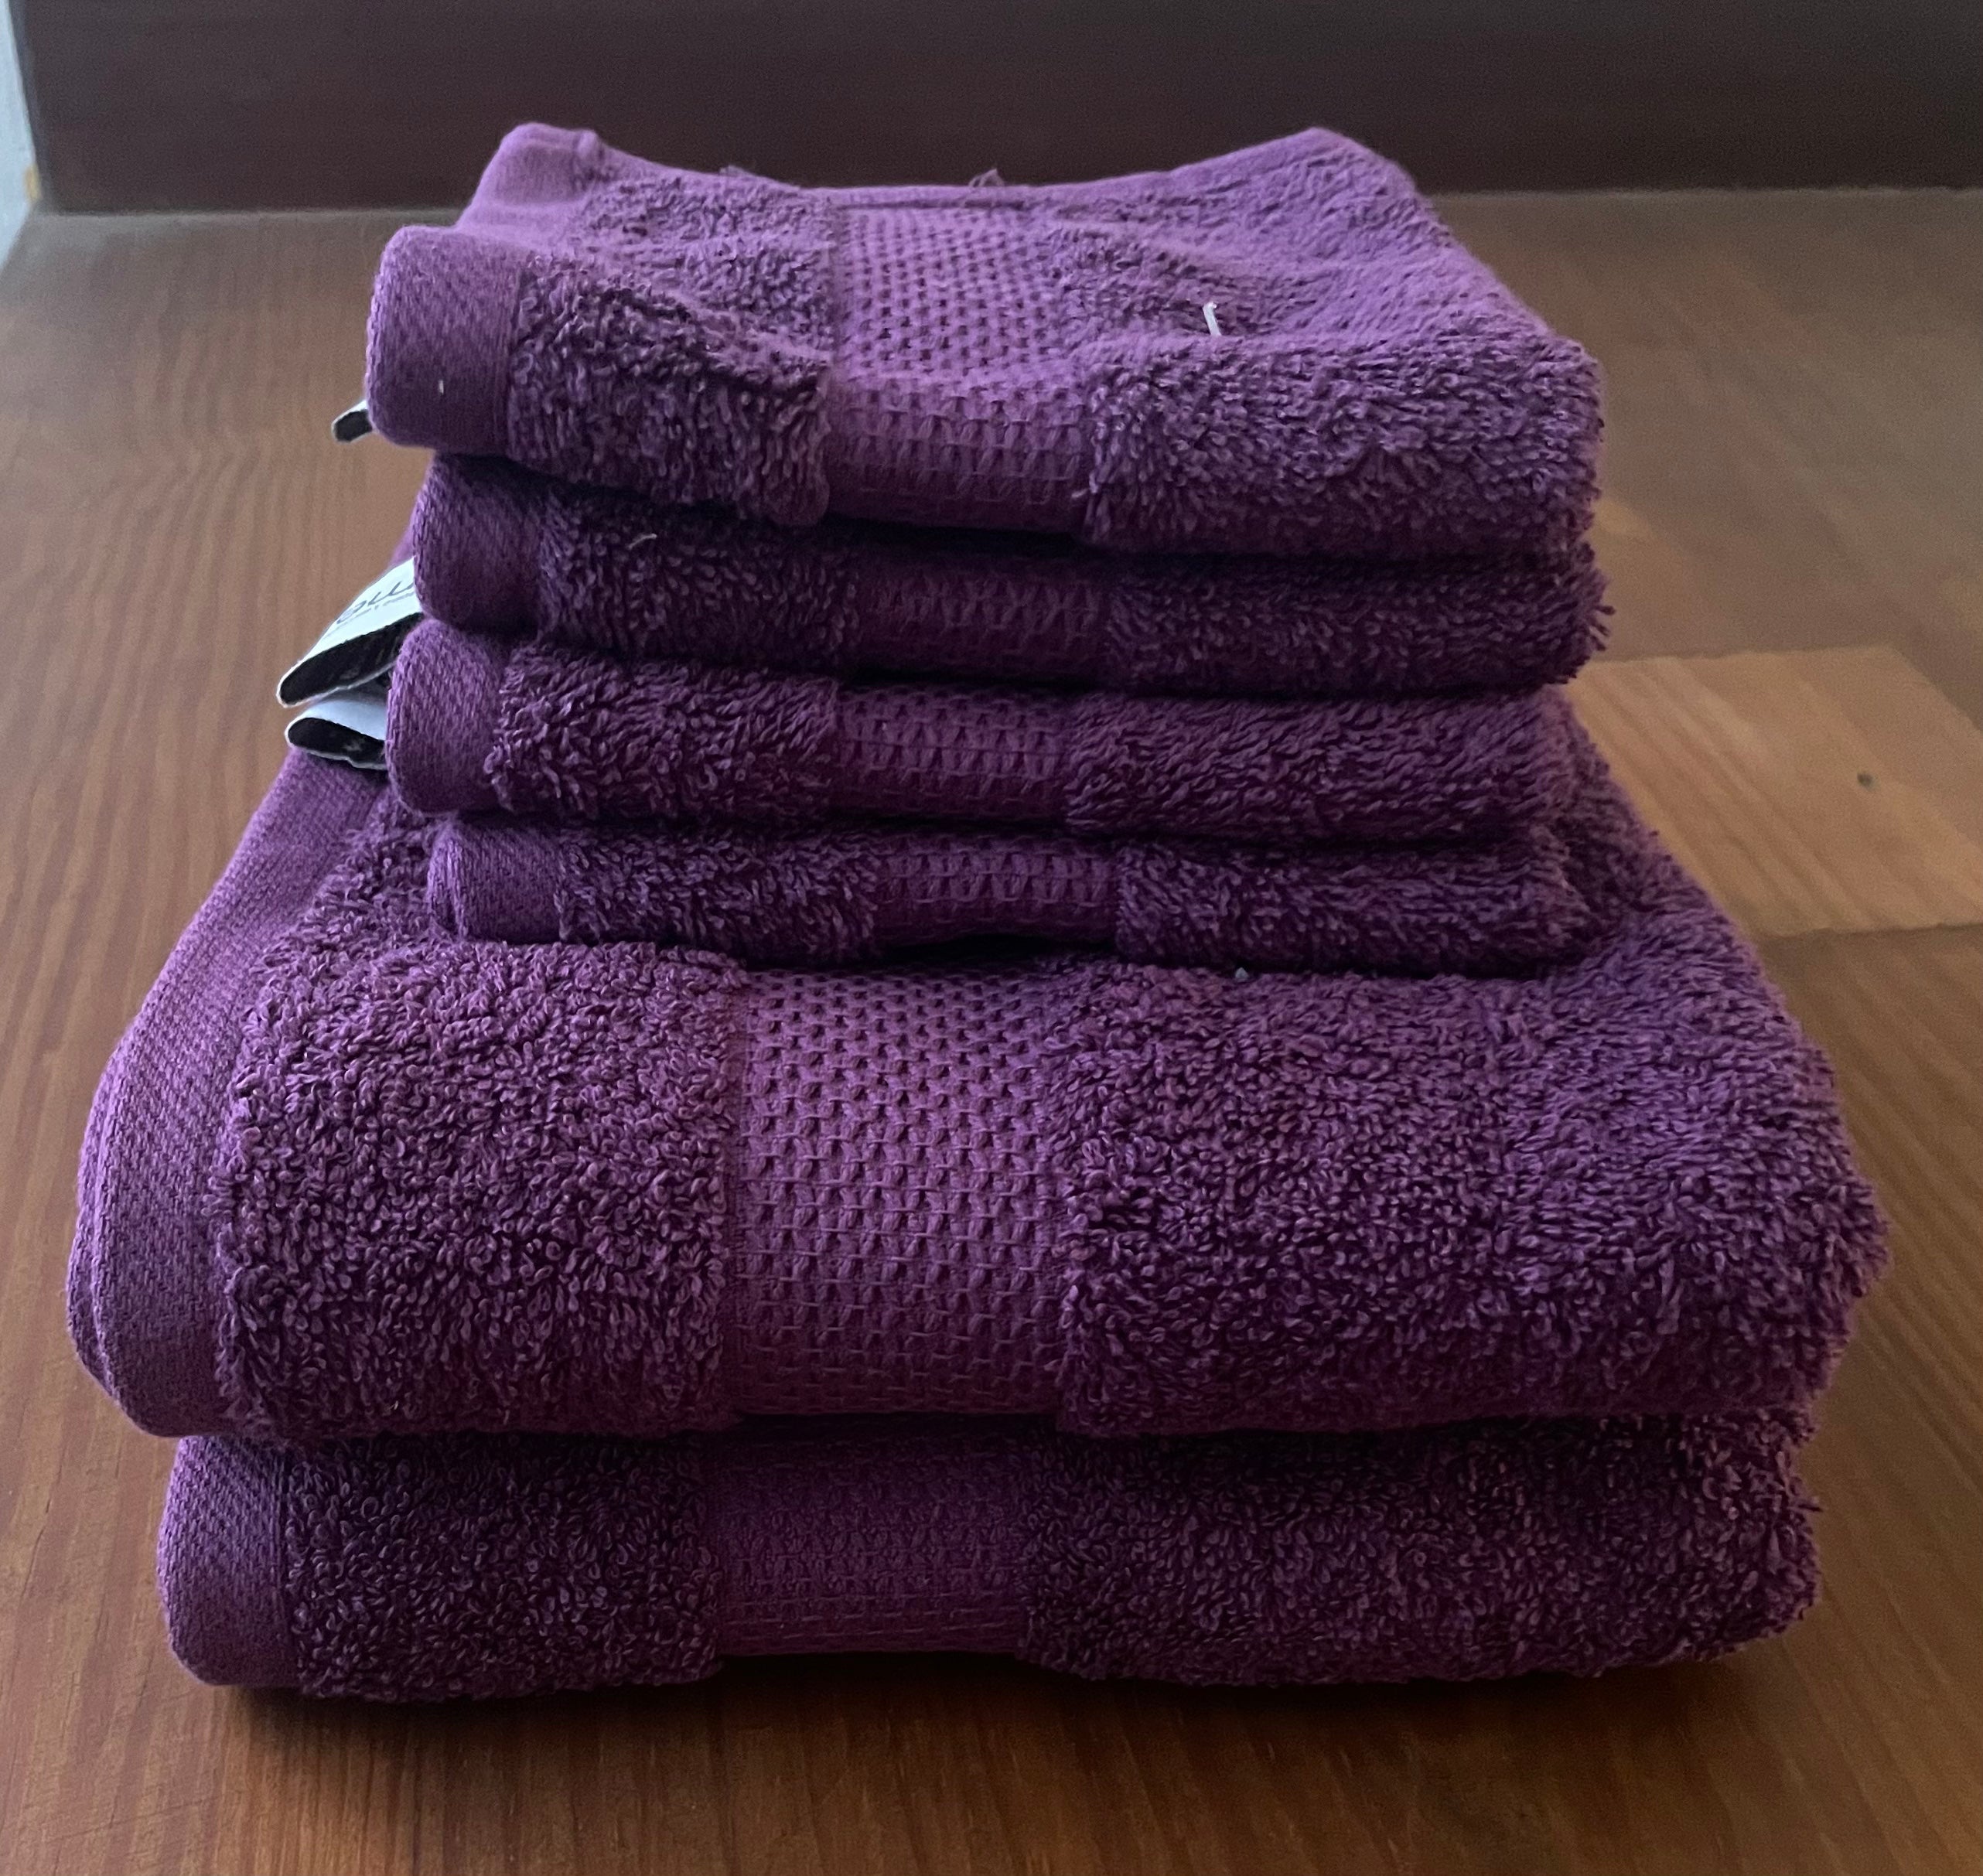 550g Cotton Towels, Plum - 4 Face Cloths & 2 Hand Towels